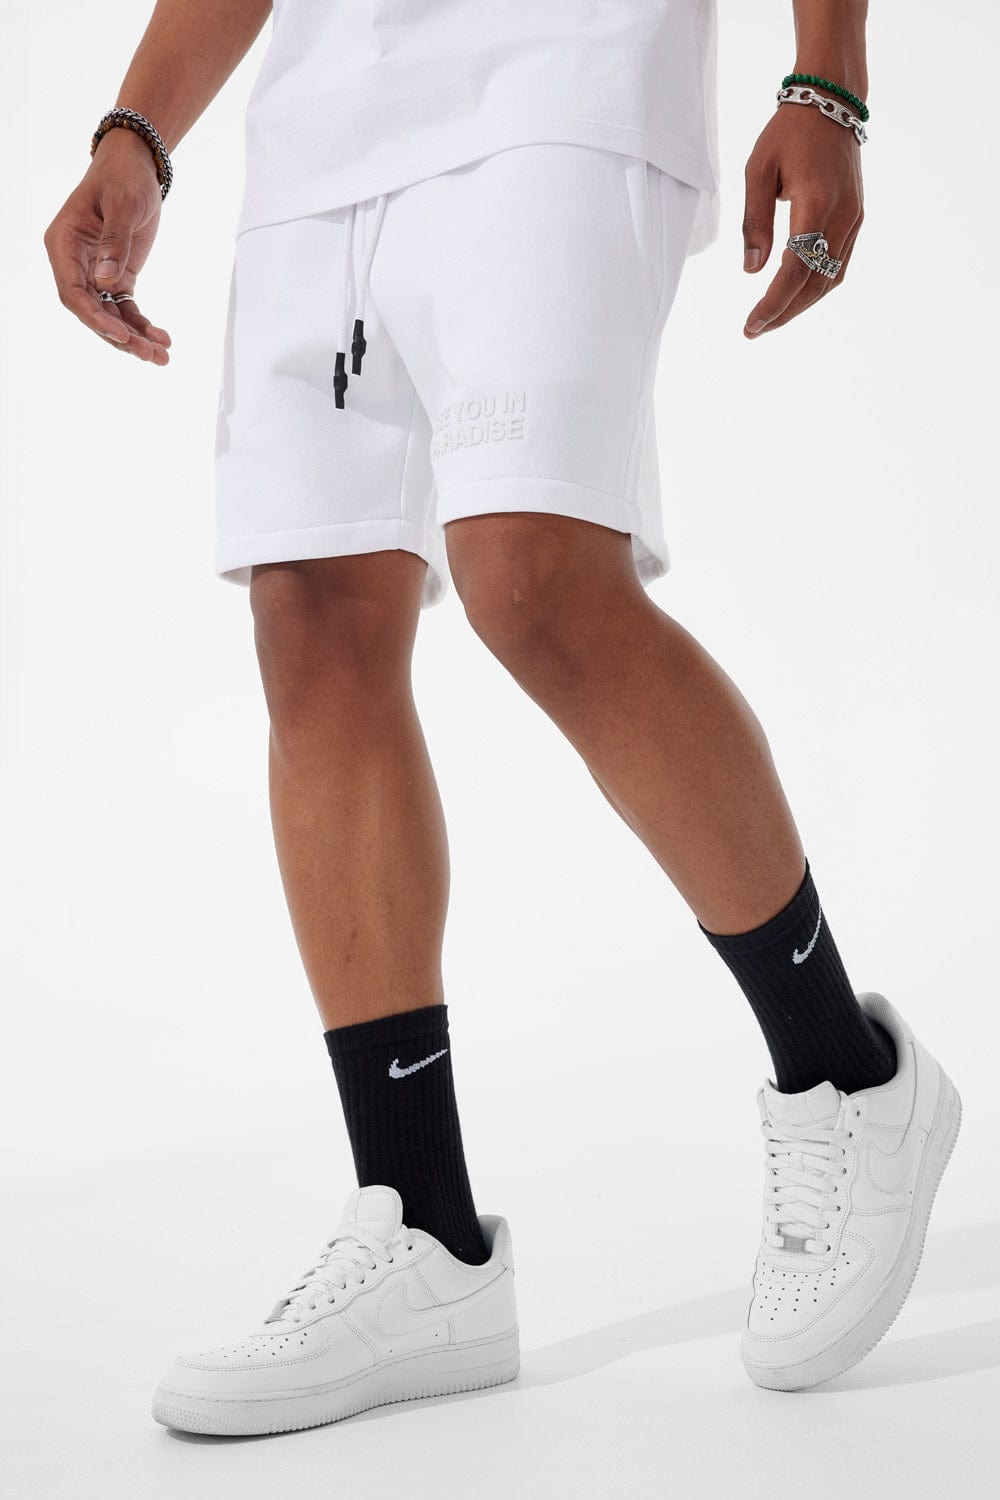 Jordan Craig Retro - Paradise Tonal Shorts White / S